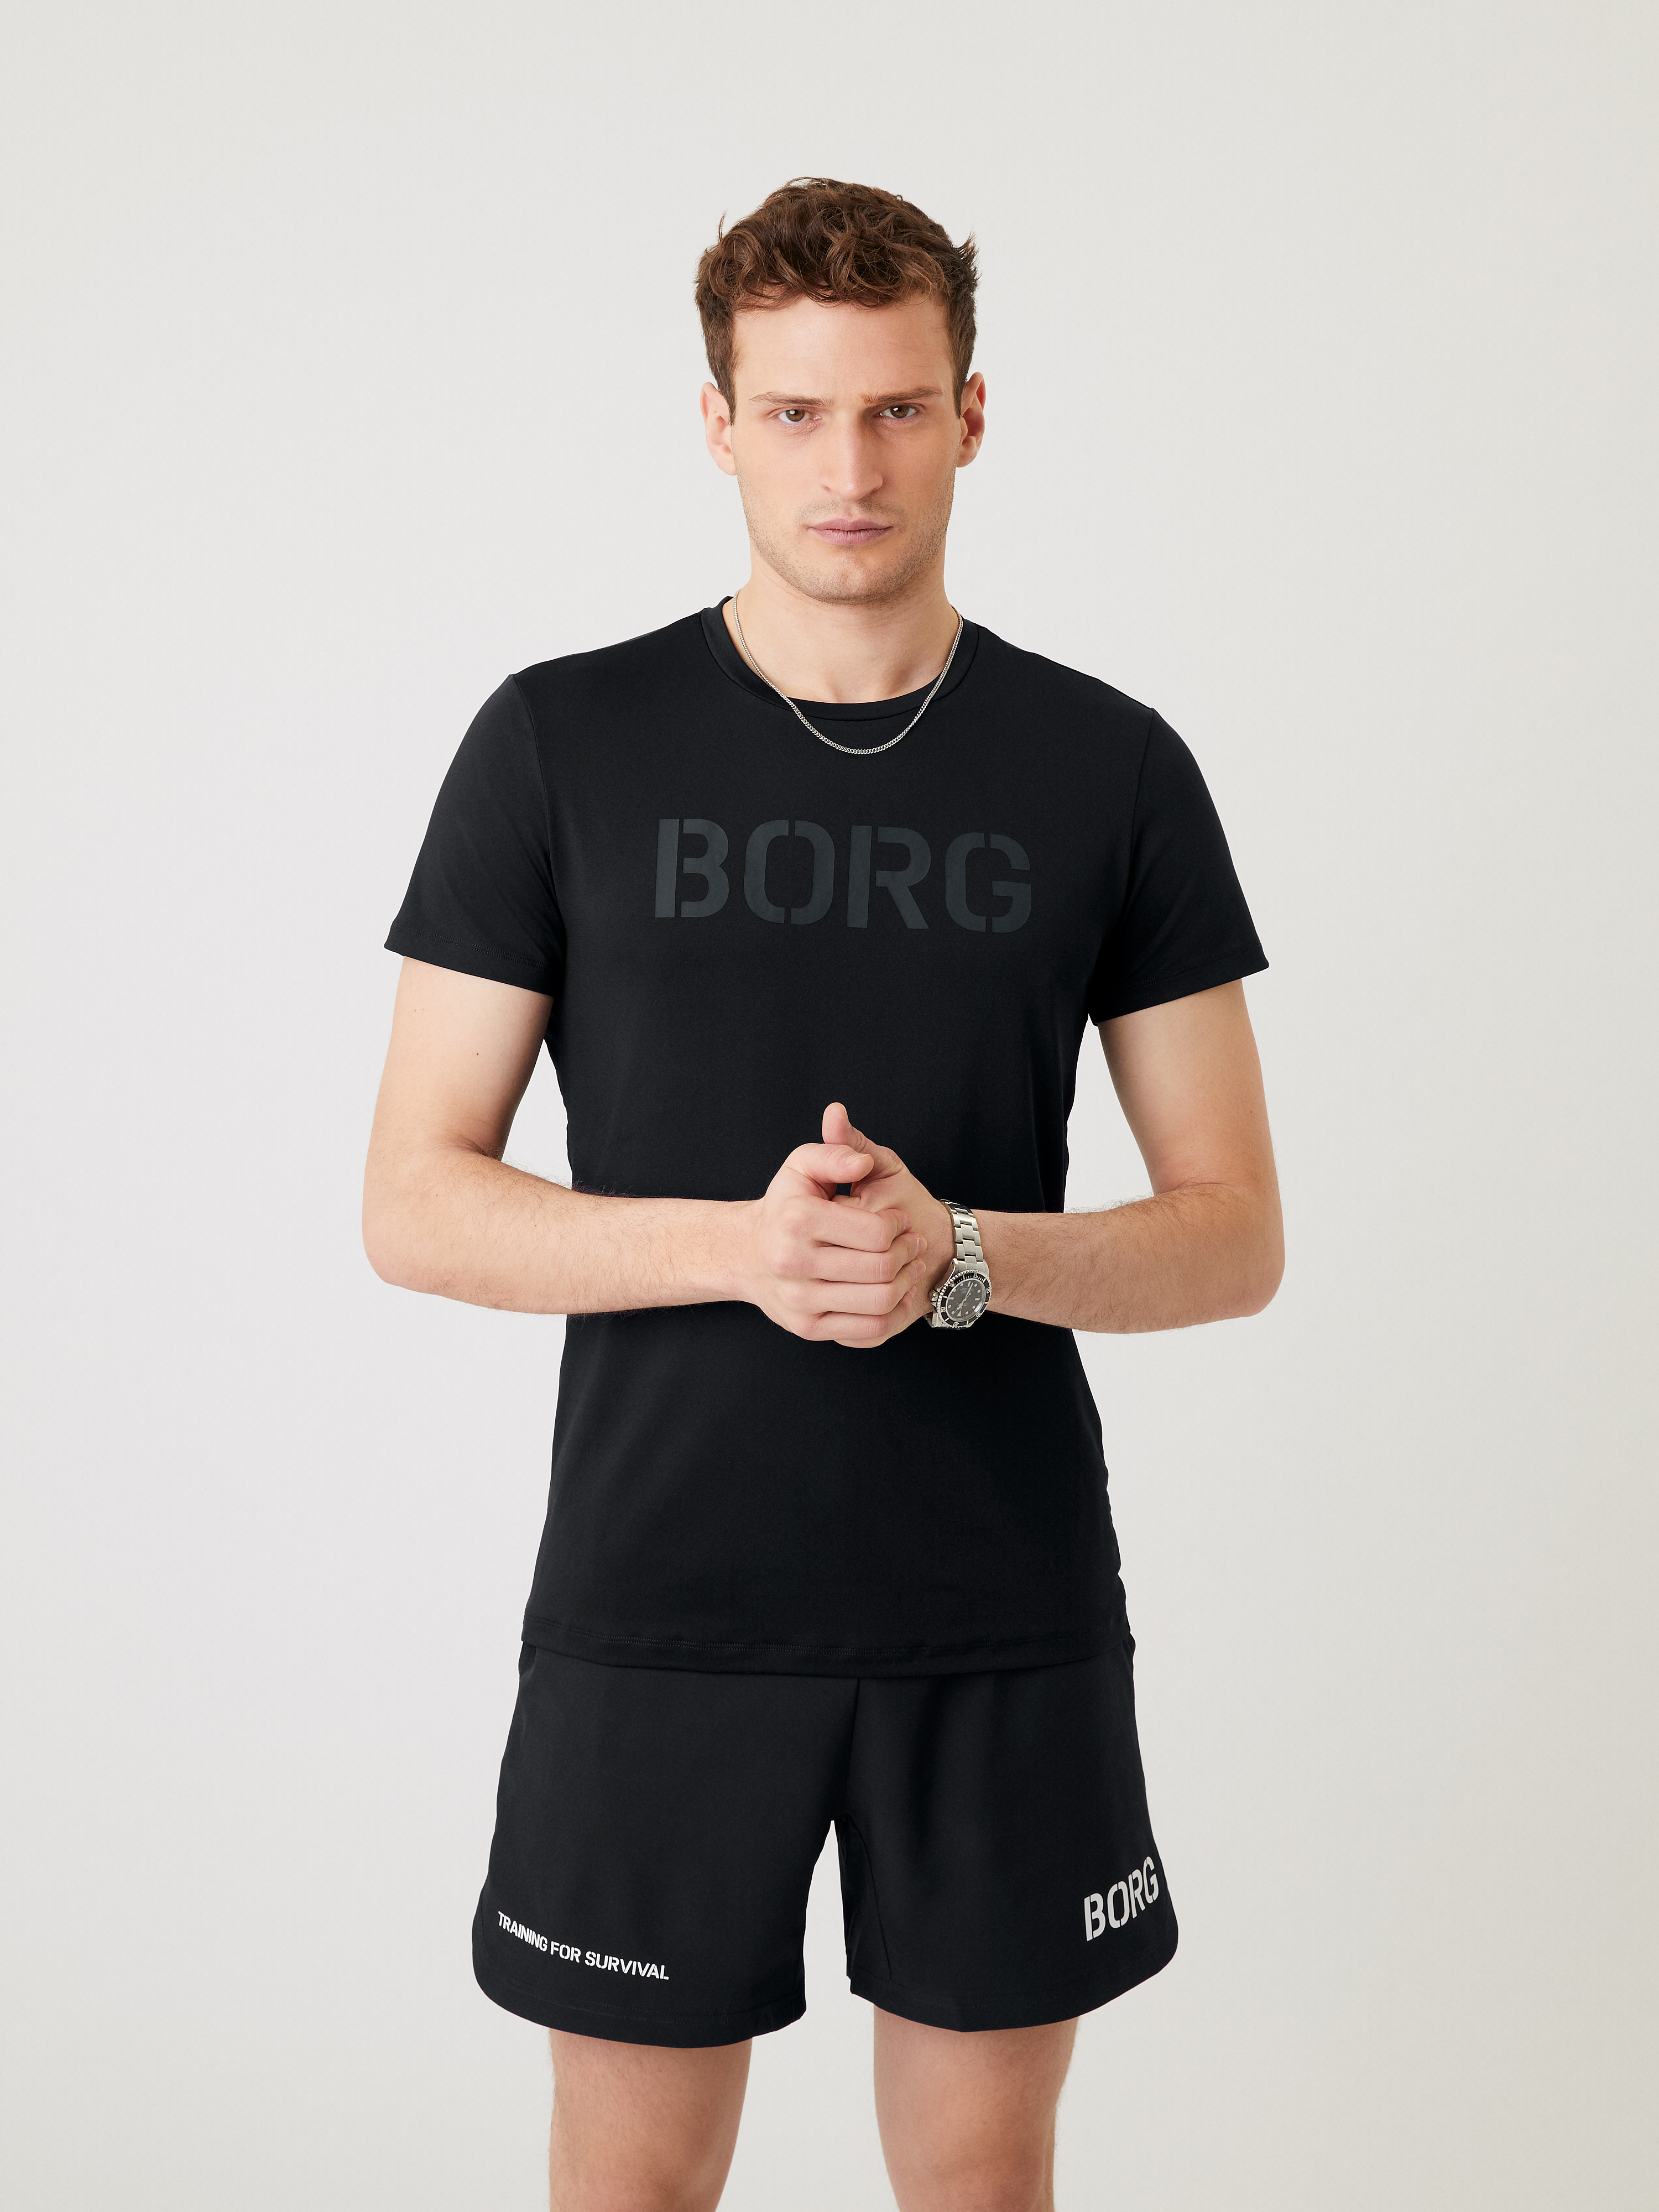 Bj\u00f6rn Borg T-shirt de sport rouge-argent\u00e9 lettrage imprim\u00e9 Mode Hauts T-shirts de sport Björn Borg 